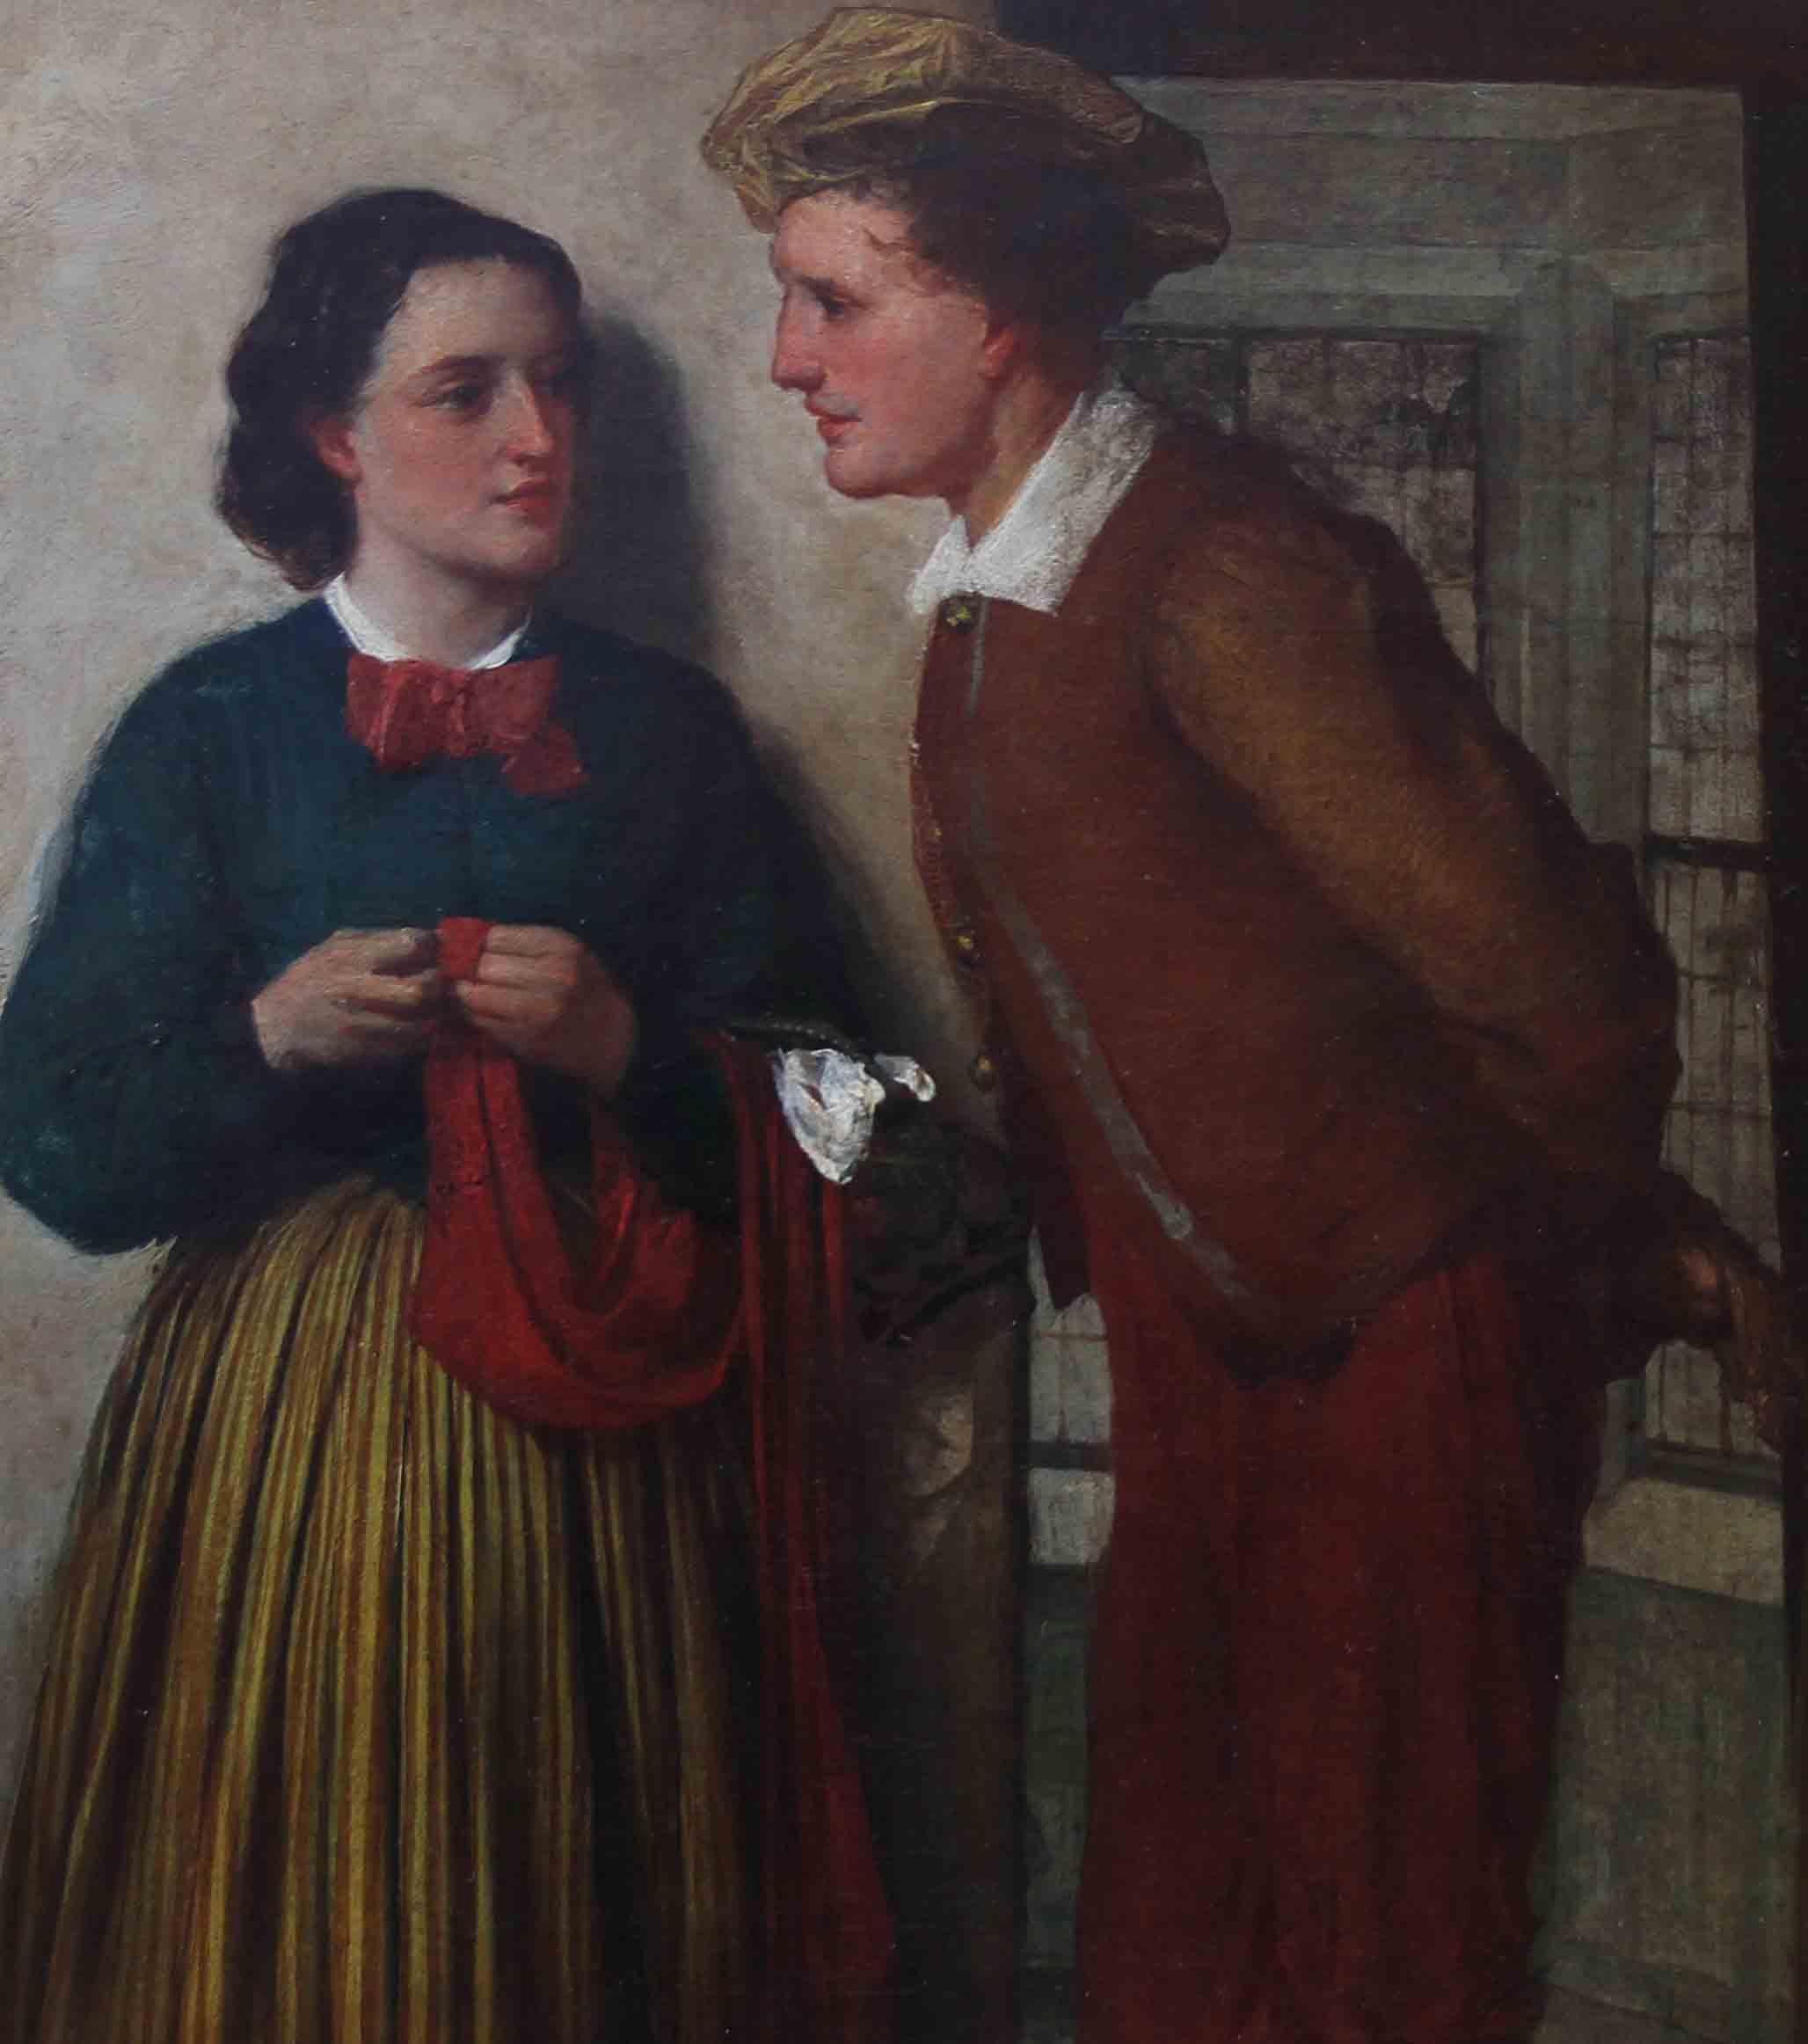 Ein feines viktorianisches schottisches Genregemälde in Öl auf Leinwand aus dem Jahr 1868 mit dem Titel The Gossip des berühmten schottischen Künstlers William Fettes Douglas RSA. Es ist eine beeindruckende Darstellung eines umwerbenden Paares in